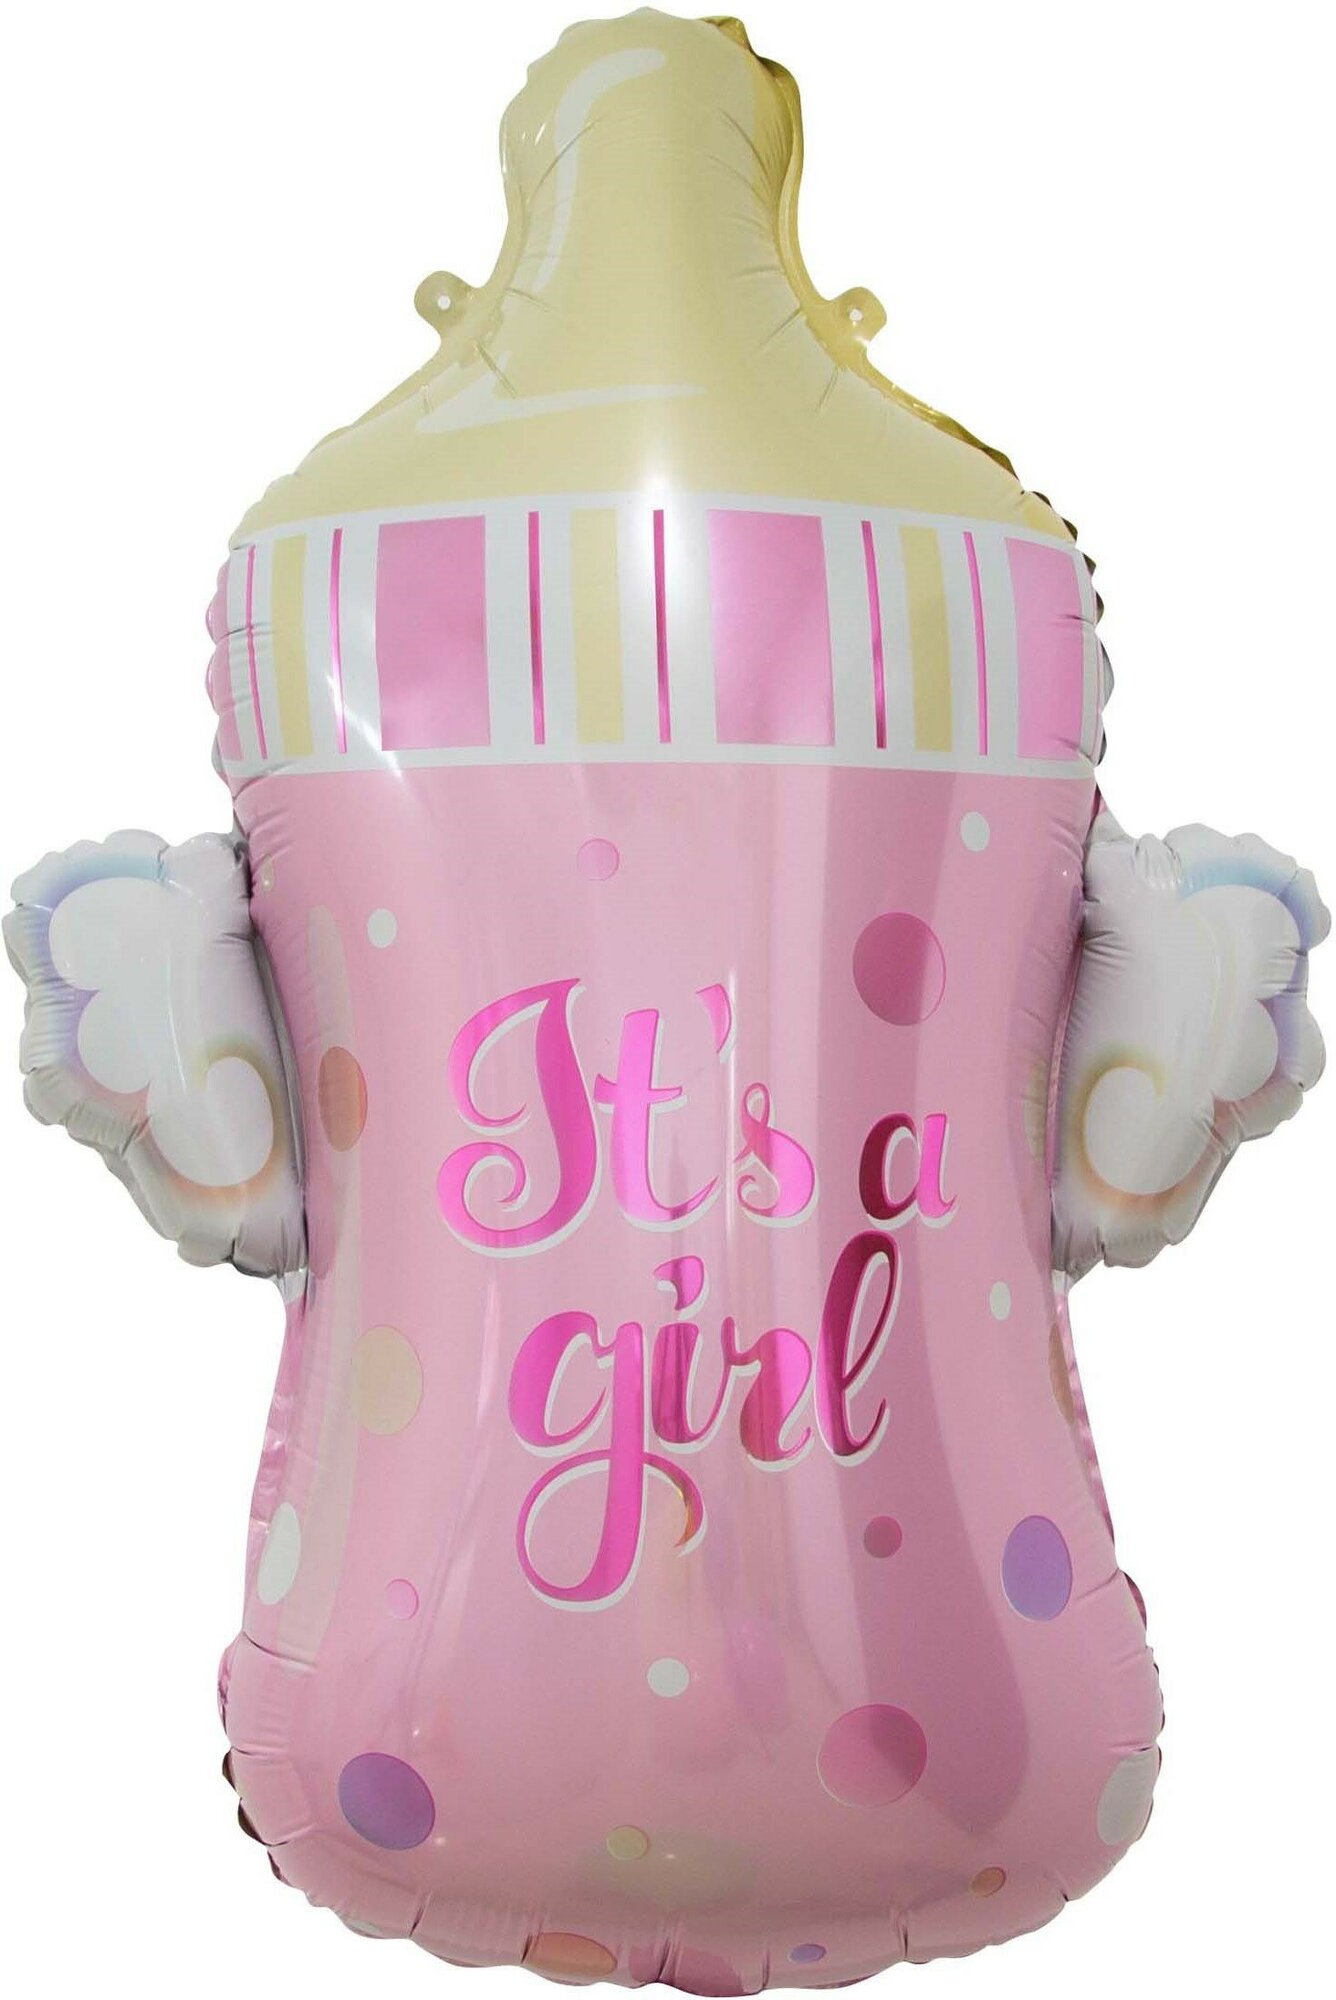 Шар (32'/81 см) Фигура, Бутылочка для малышки, Розовый, 1 шт.